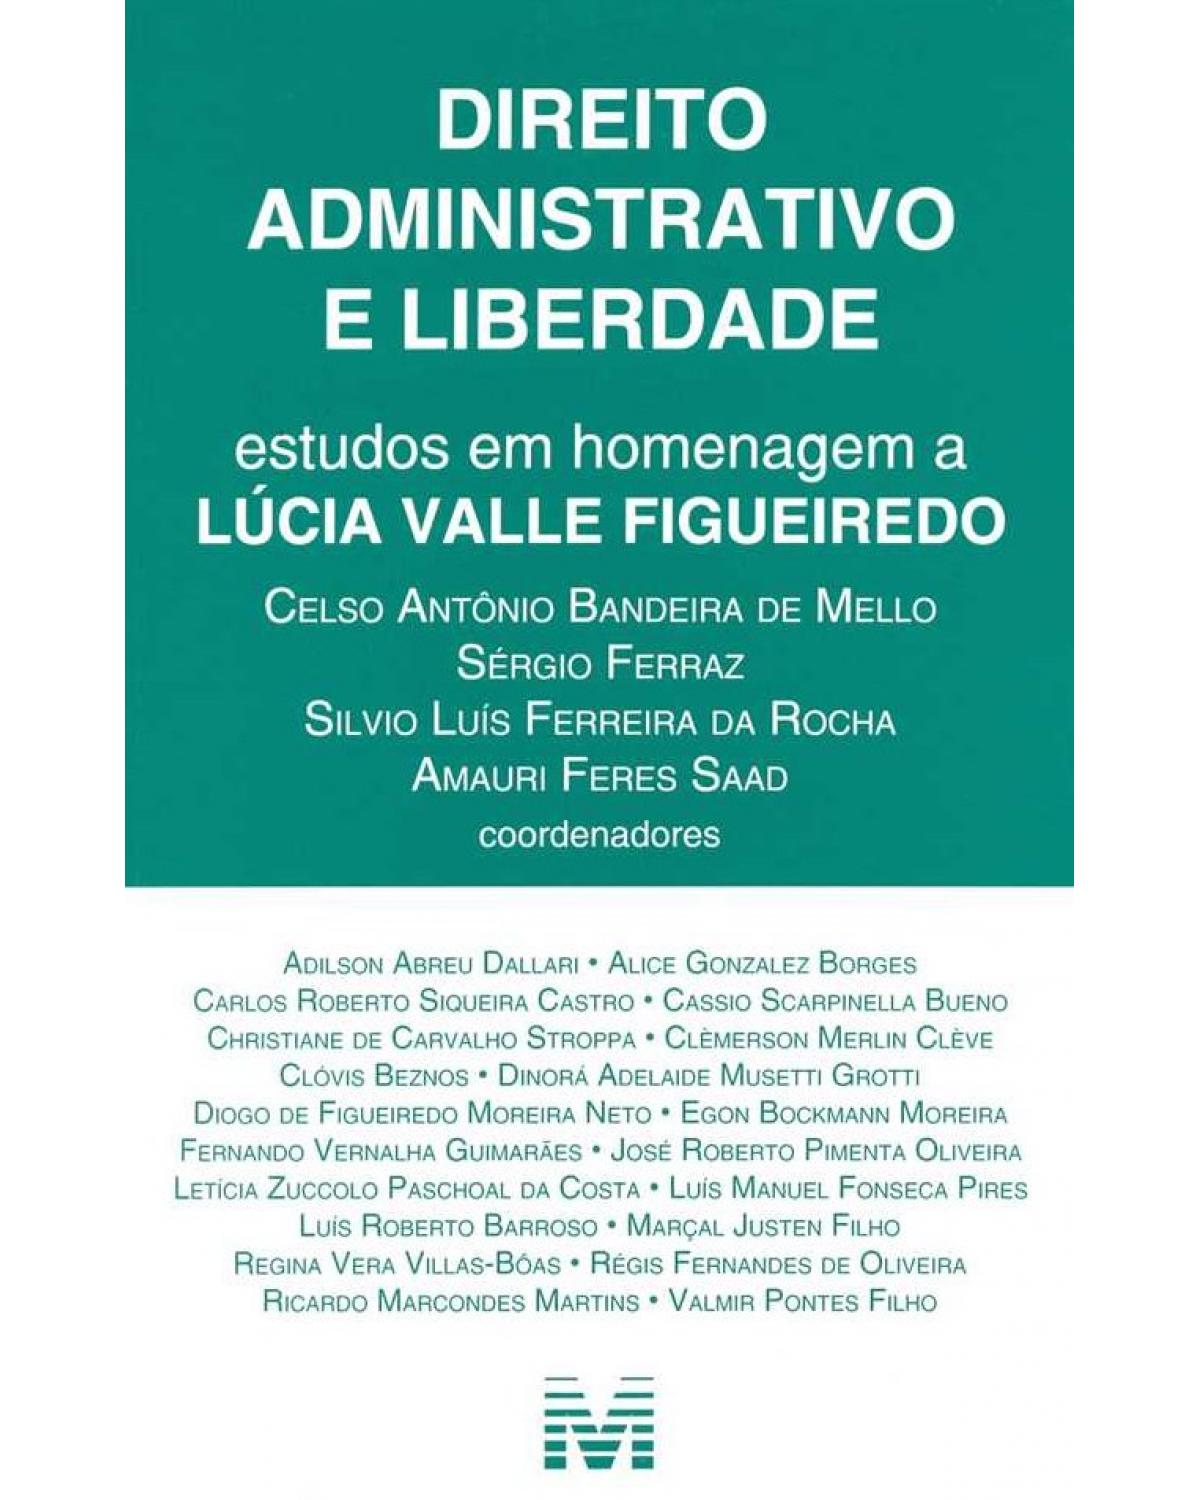 Direito administrativo e liberdade: Estudos em homenagem a Lúcia Valle Figueiredo - 1ª Edição